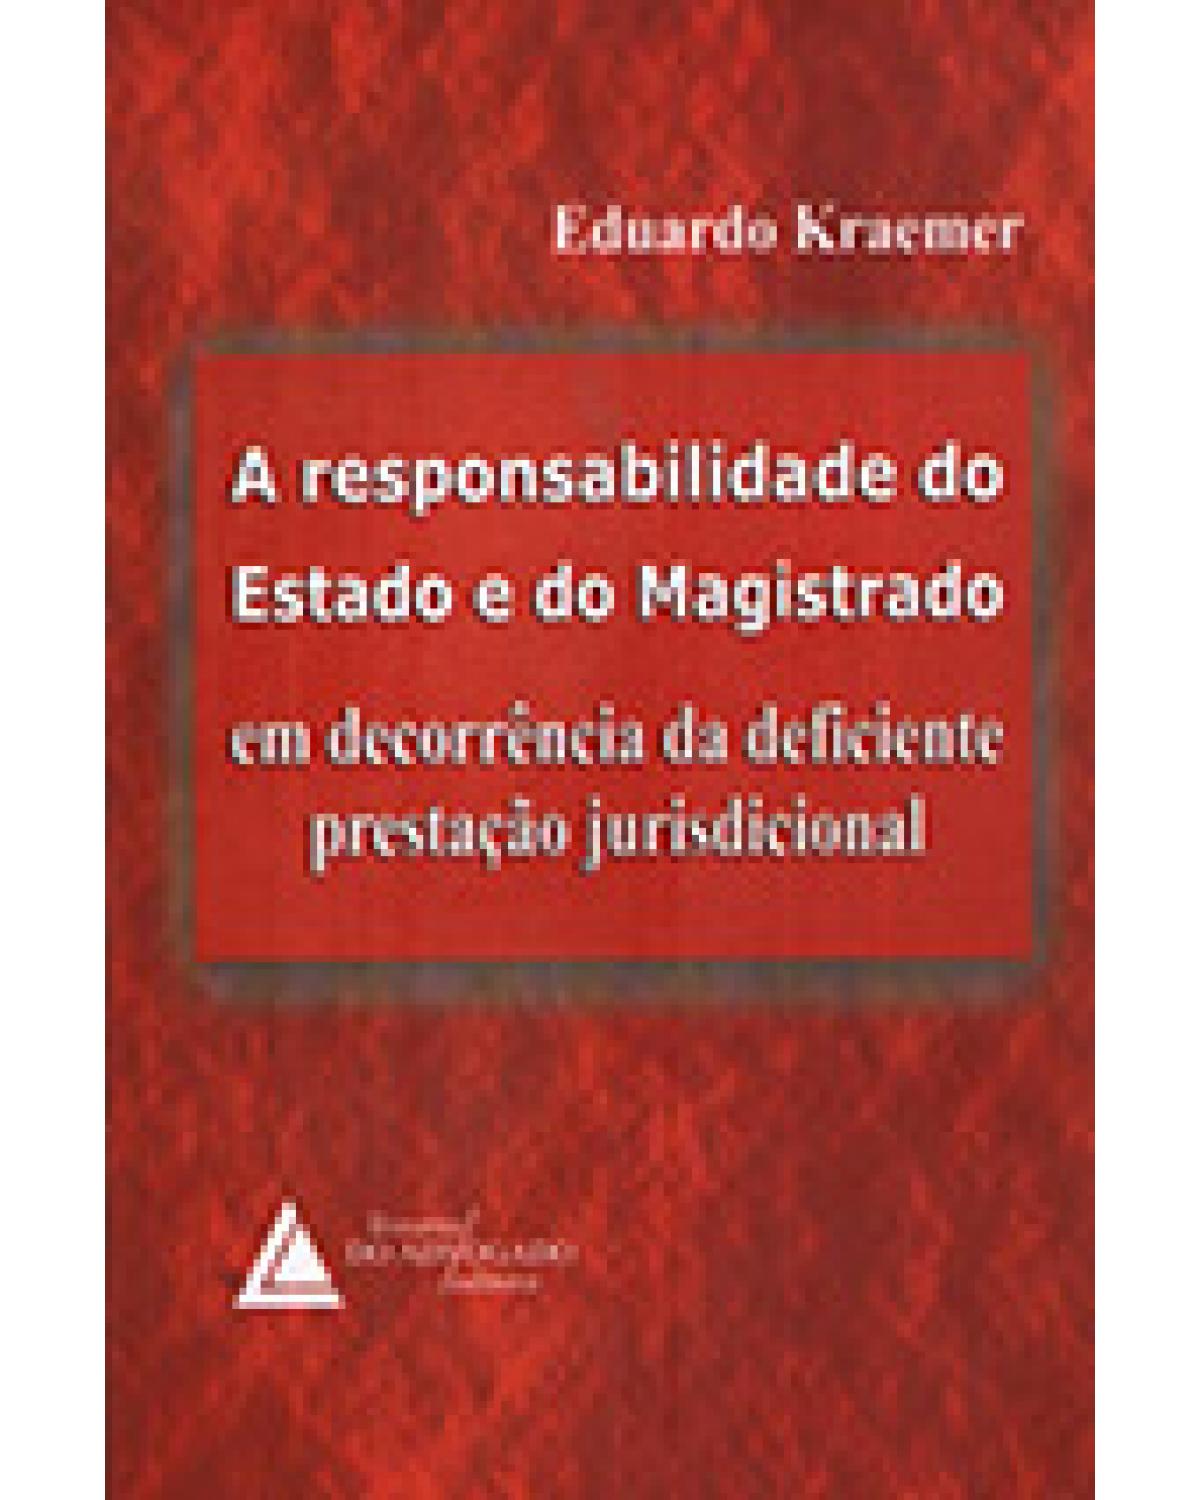 A responsabilidade do Estado e do Magistrado: Em decorrência da deficiente prestação jurisdicional - 1ª Edição | 2004